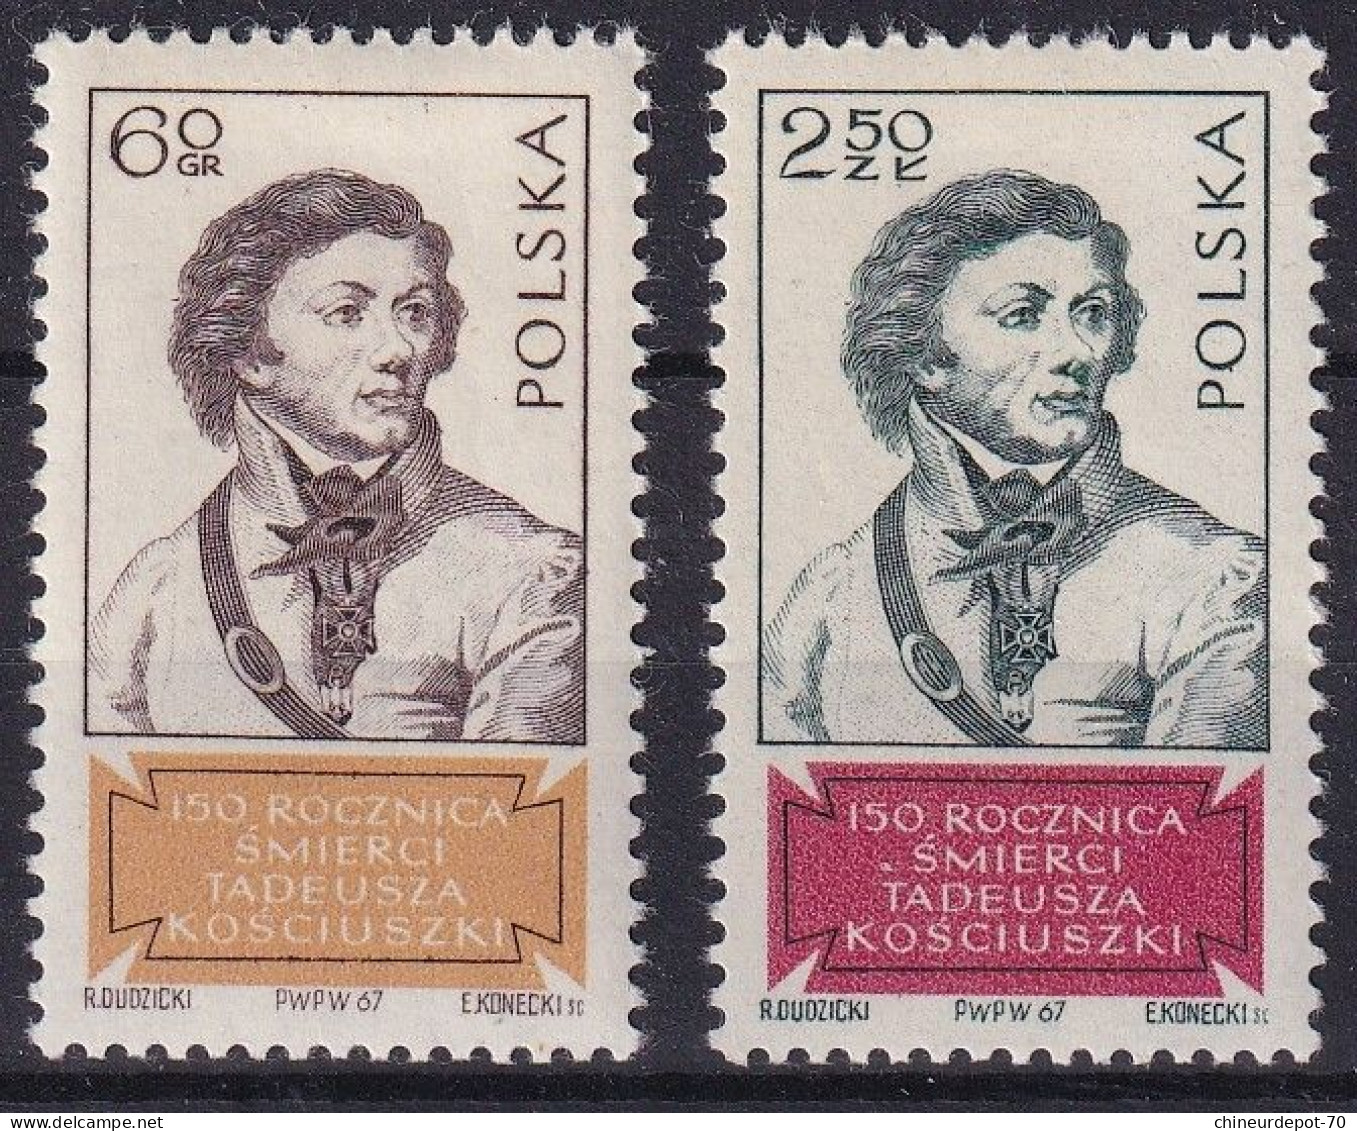 petit lot de timbres polonais polska pologne voir 10 photos  neufs avec charnières *